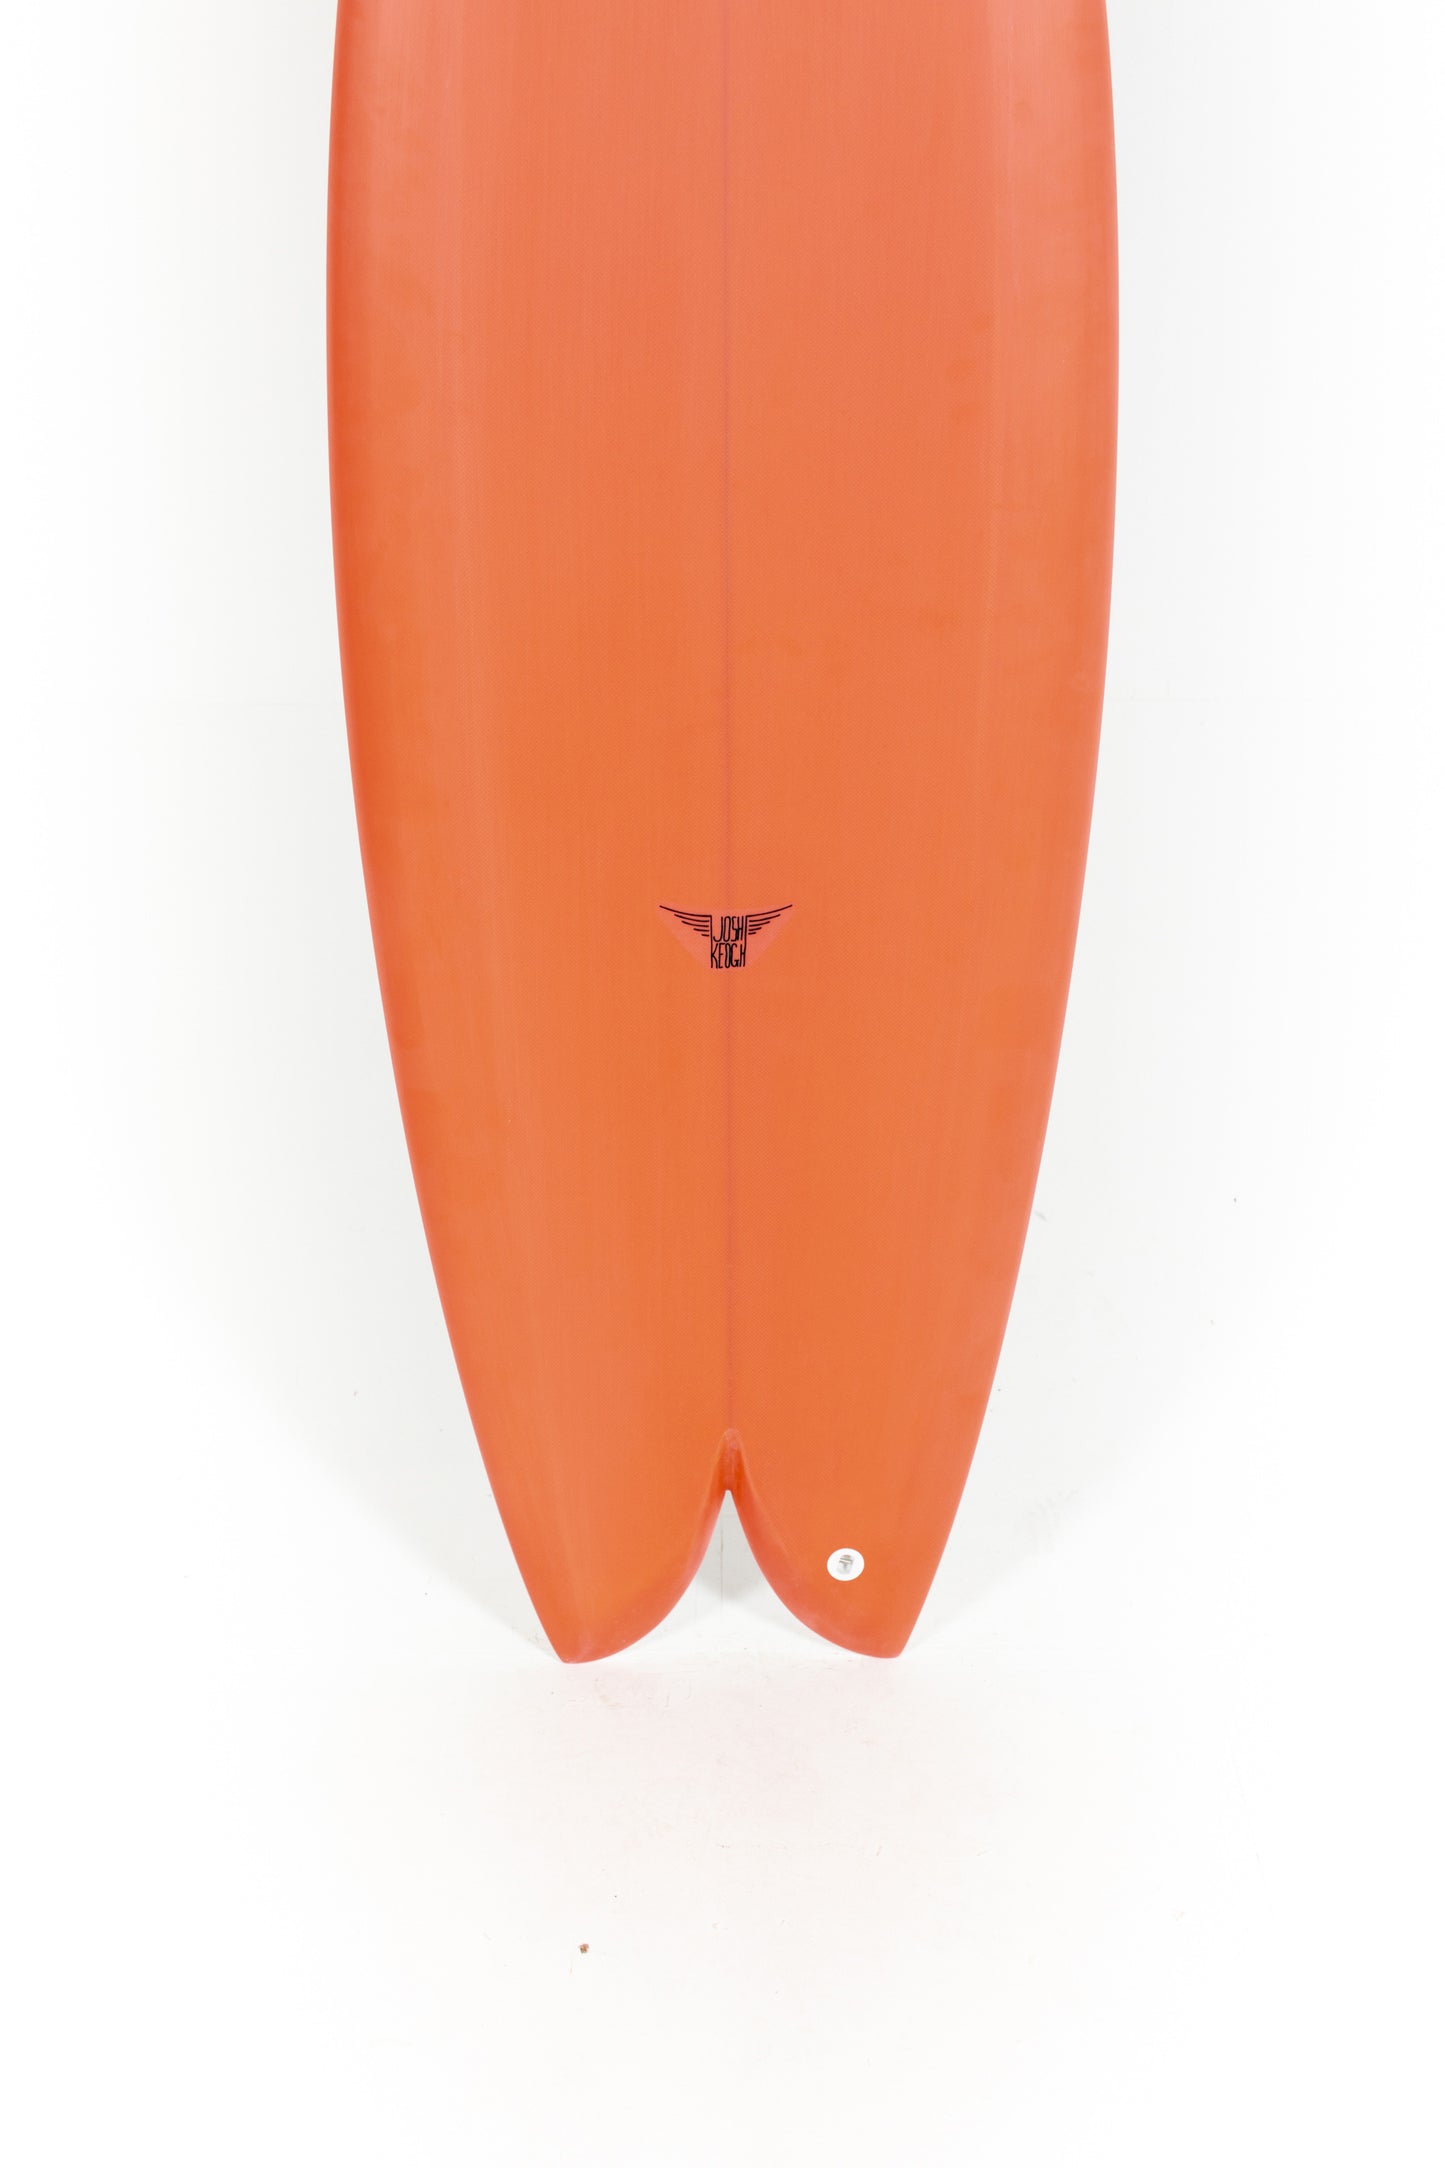 
                  
                    Pukas Surf Shop_Joshua Keogh Surfboard - MONAD by Joshua Keogh - 5'4" x 20 1/2 x 2 3/8 - MONAD54
                  
                